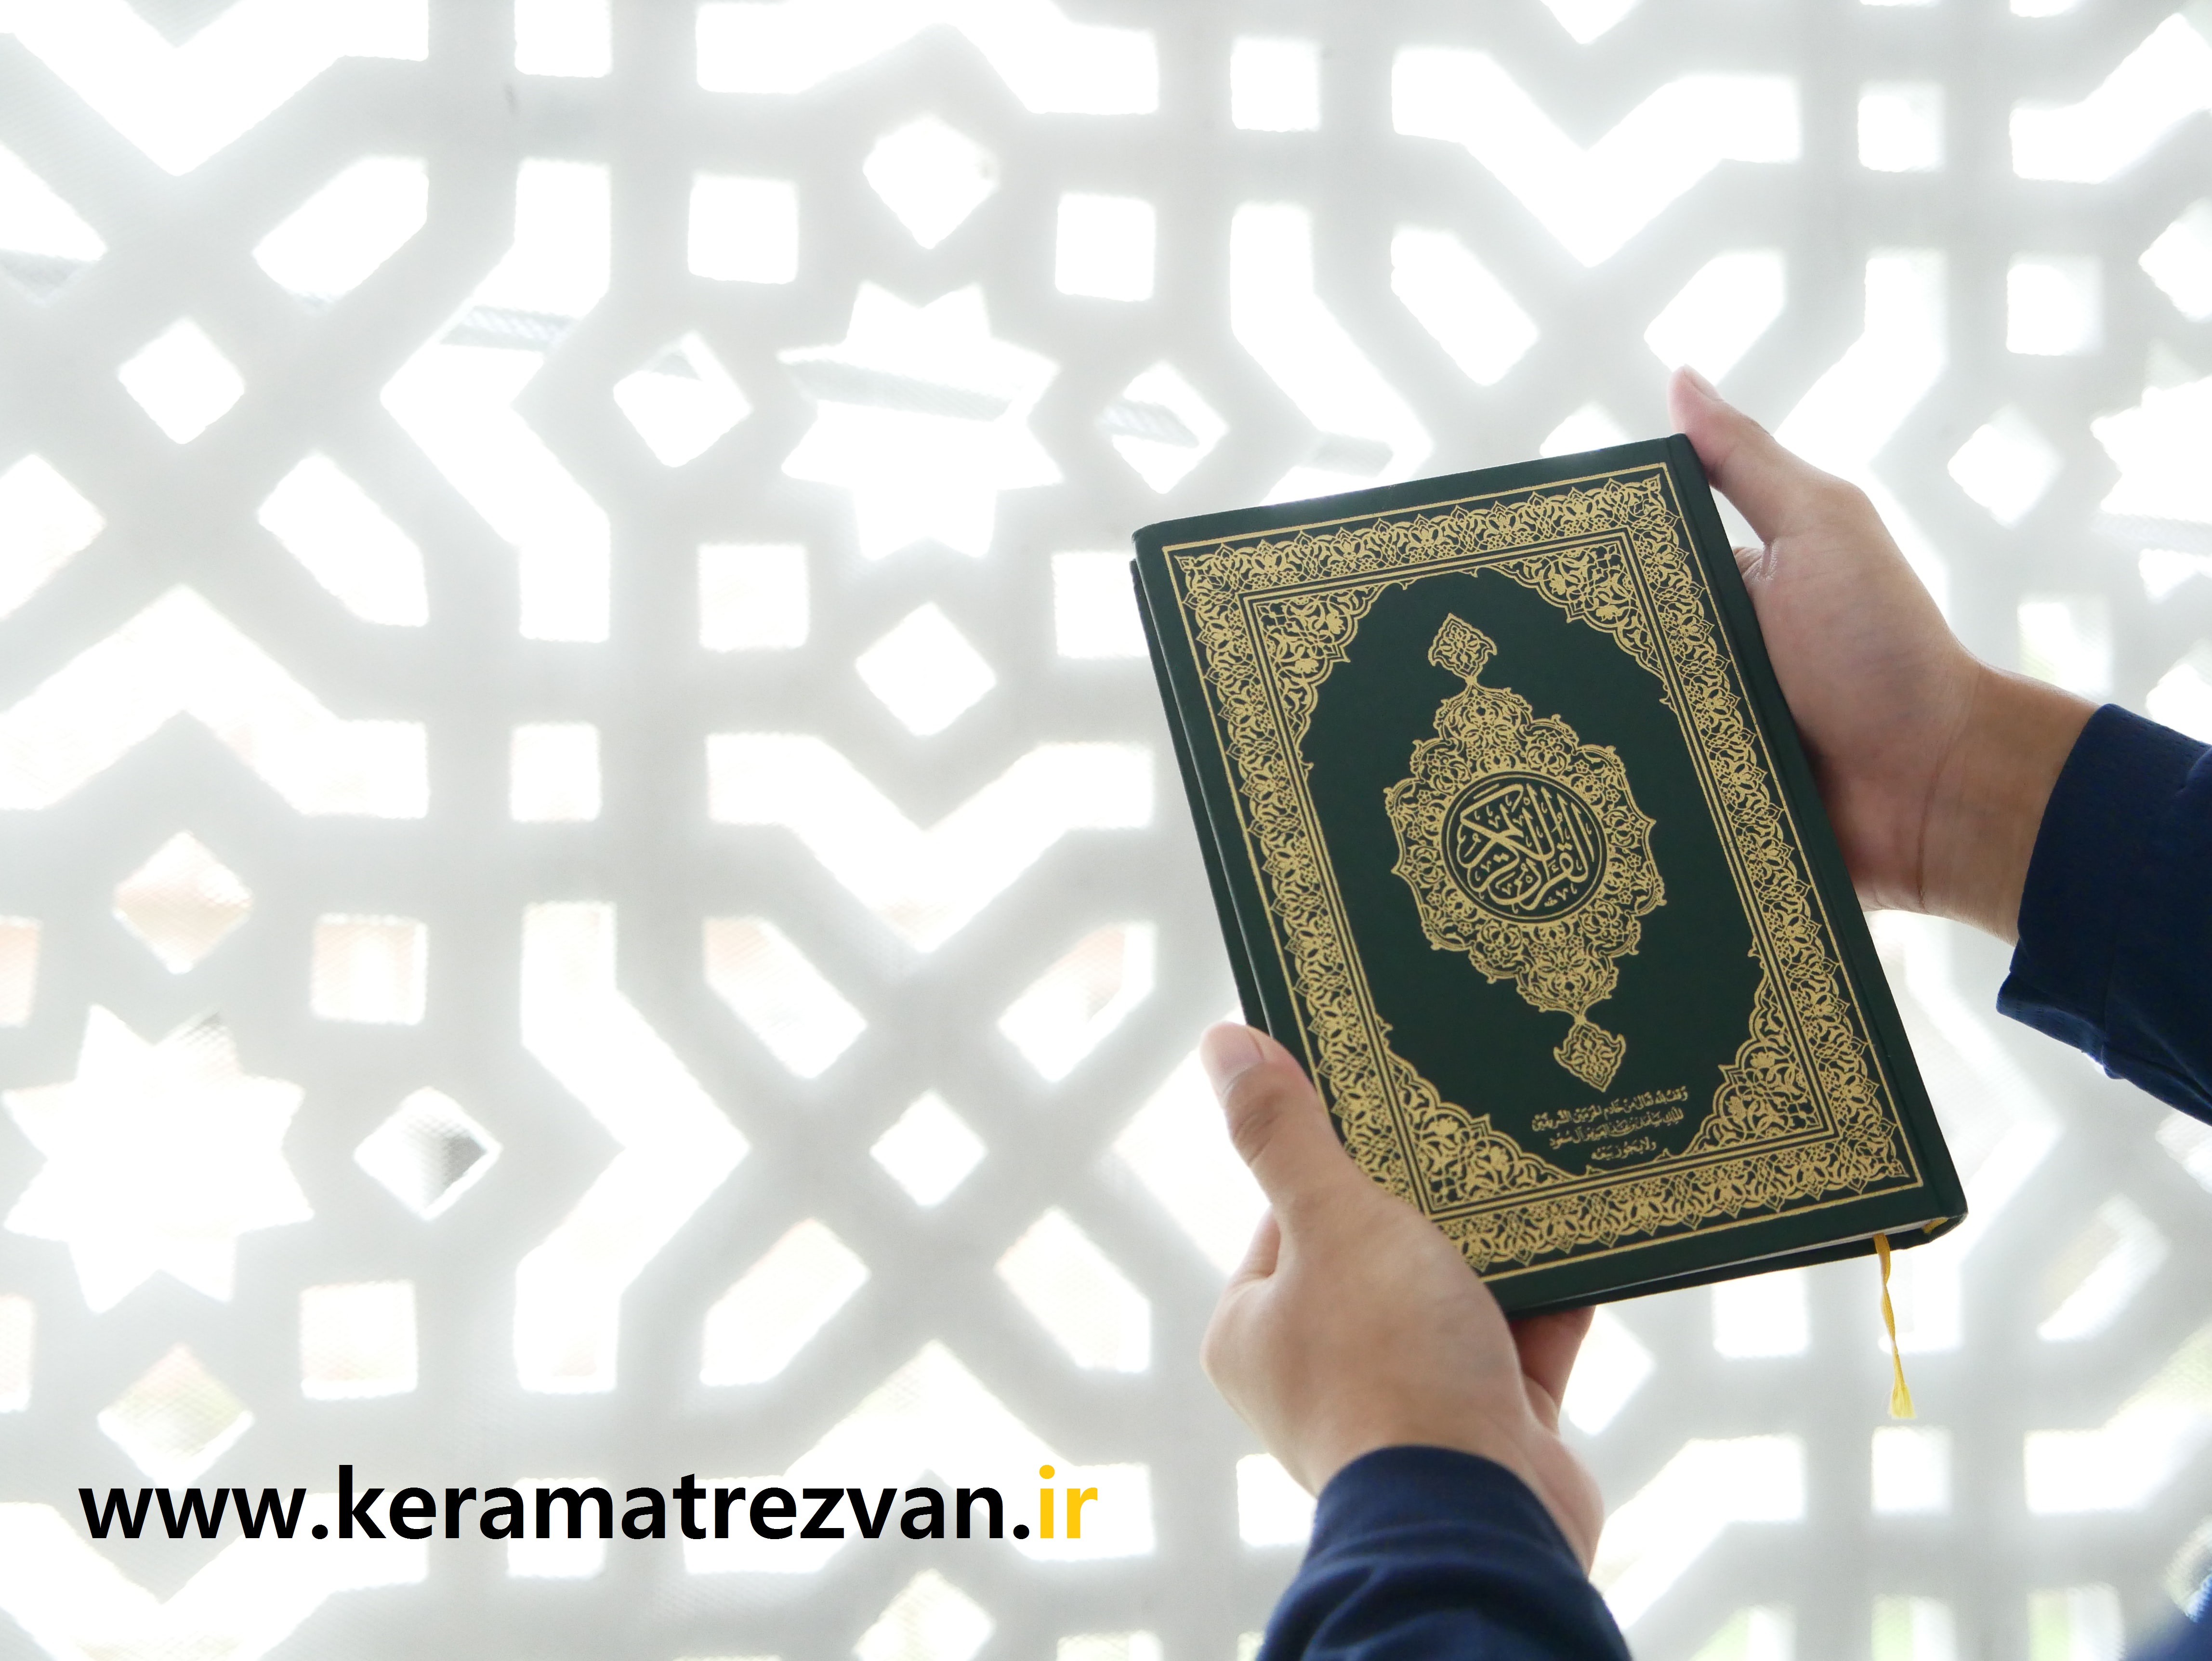 چطور قرآن را حفظ کنم؟